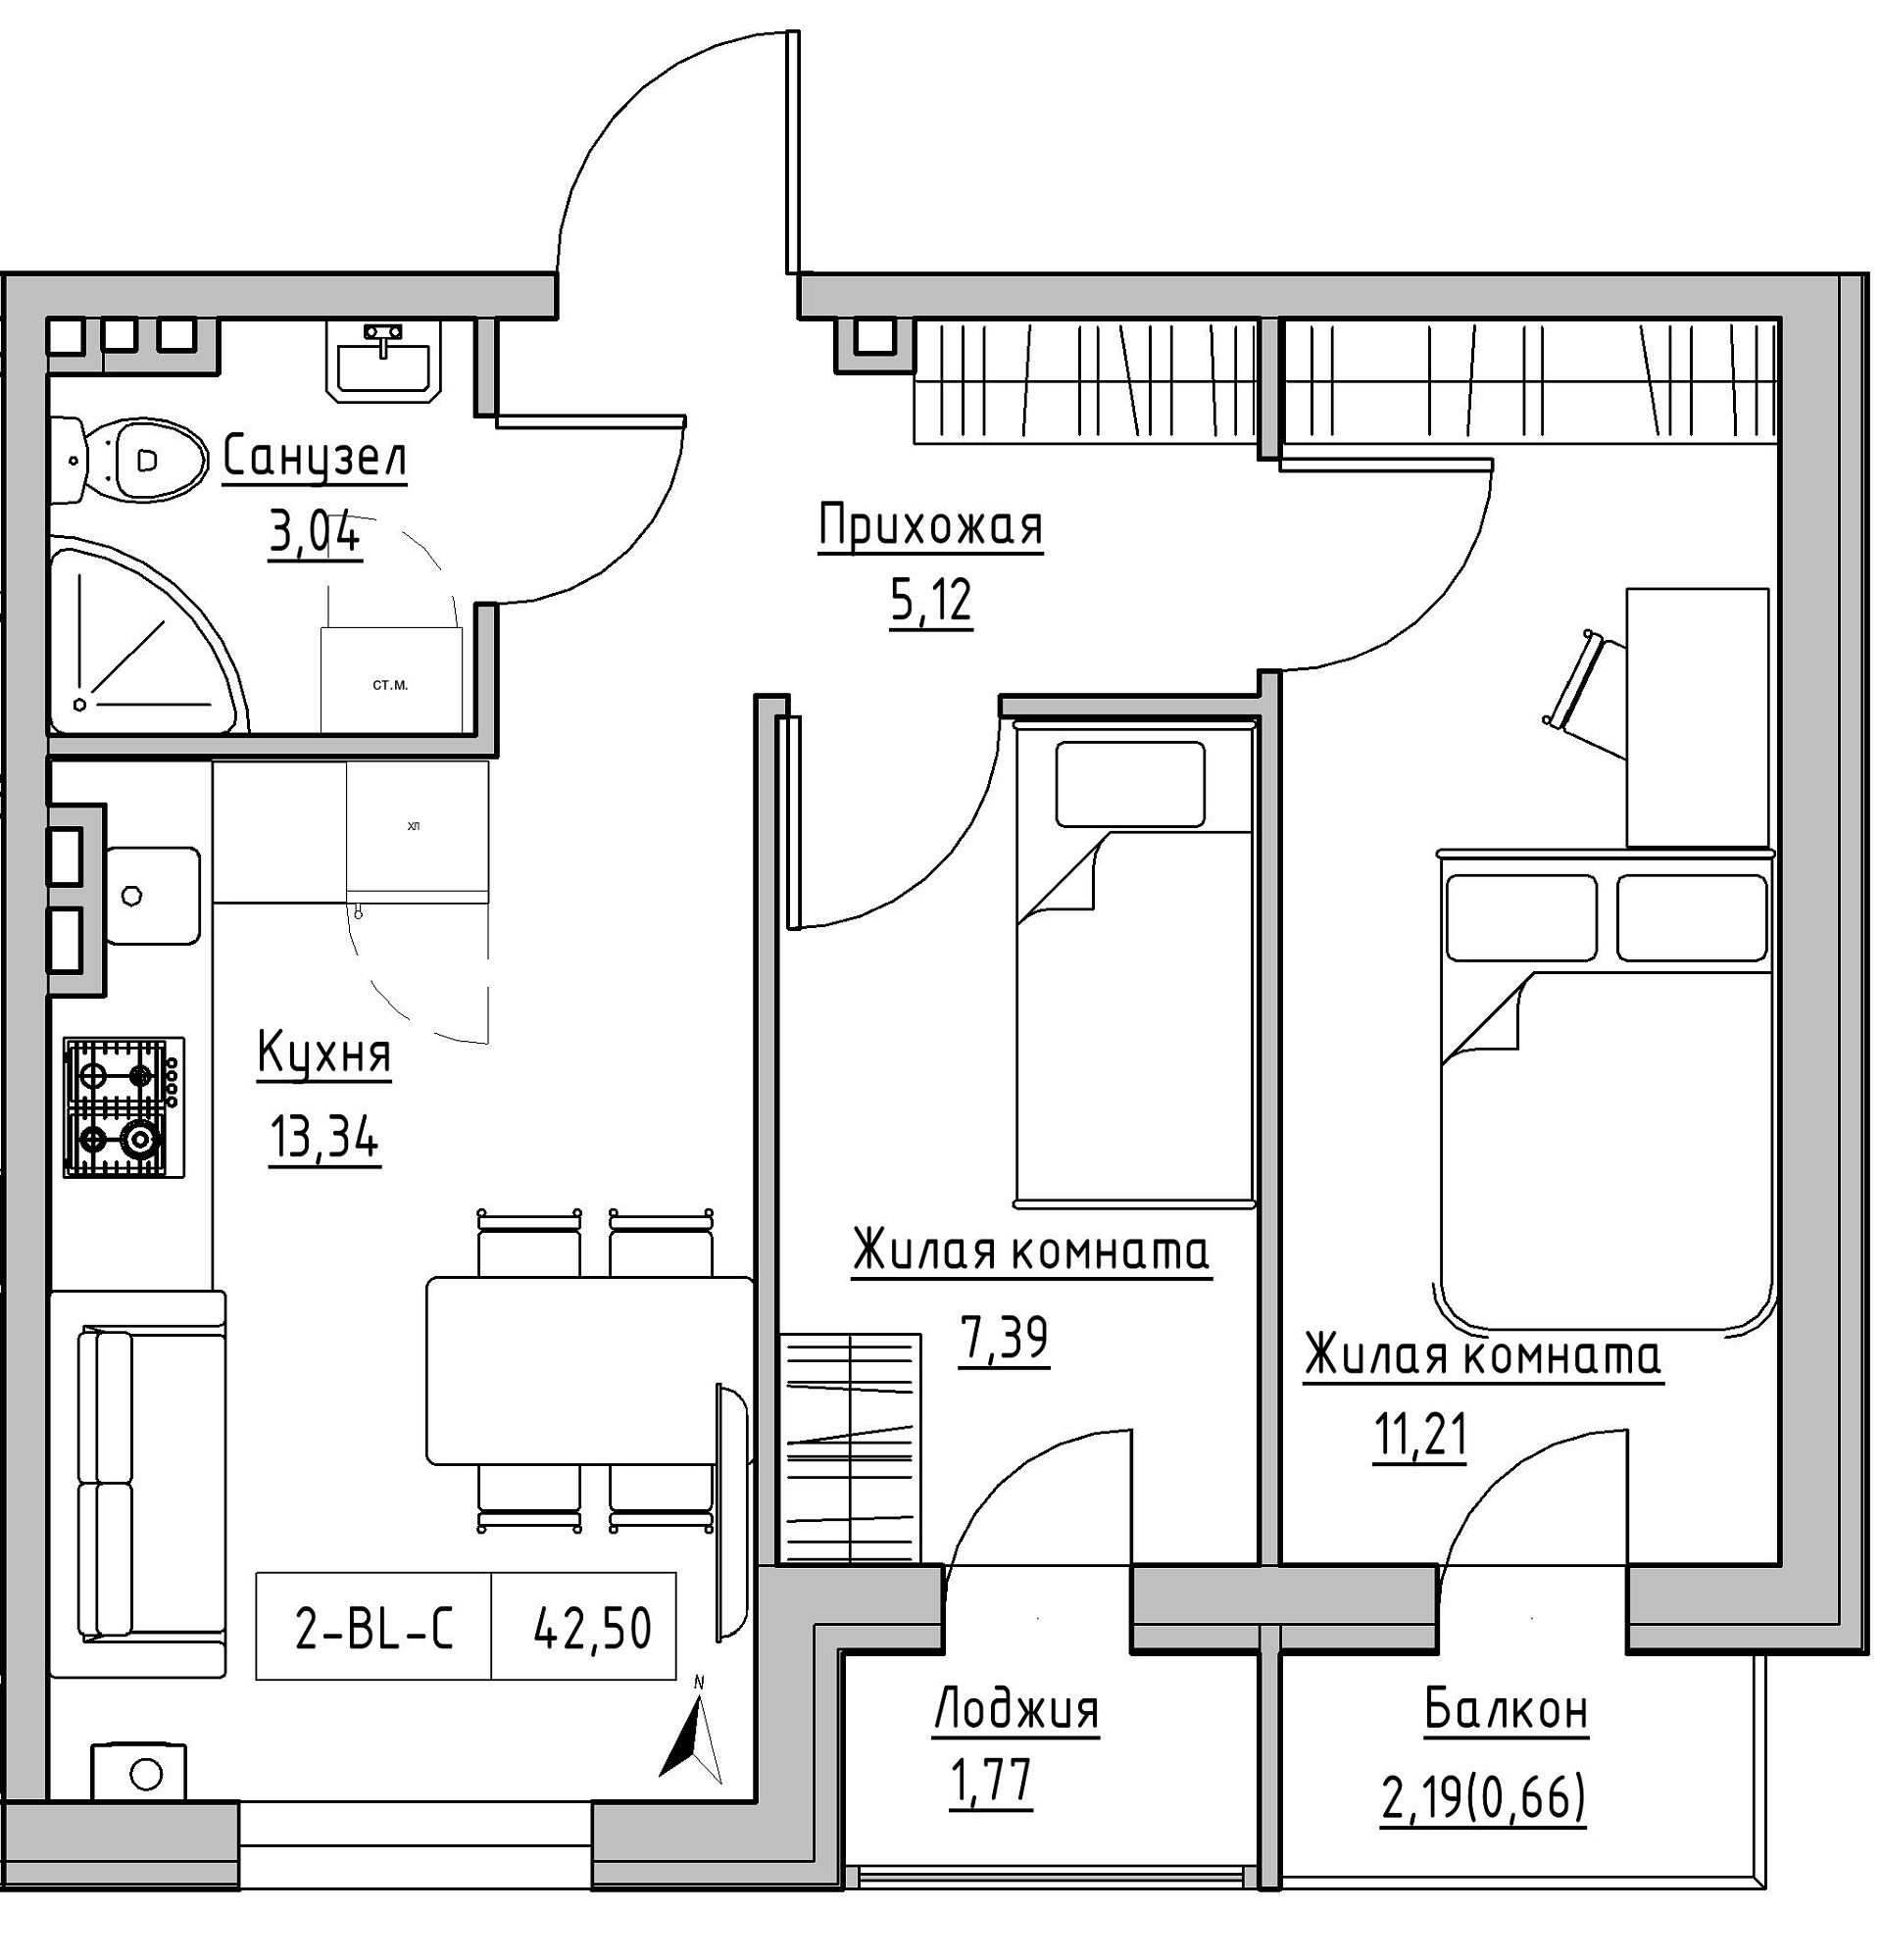 Планування 2-к квартира площею 42.5м2, KS-024-02/0005.